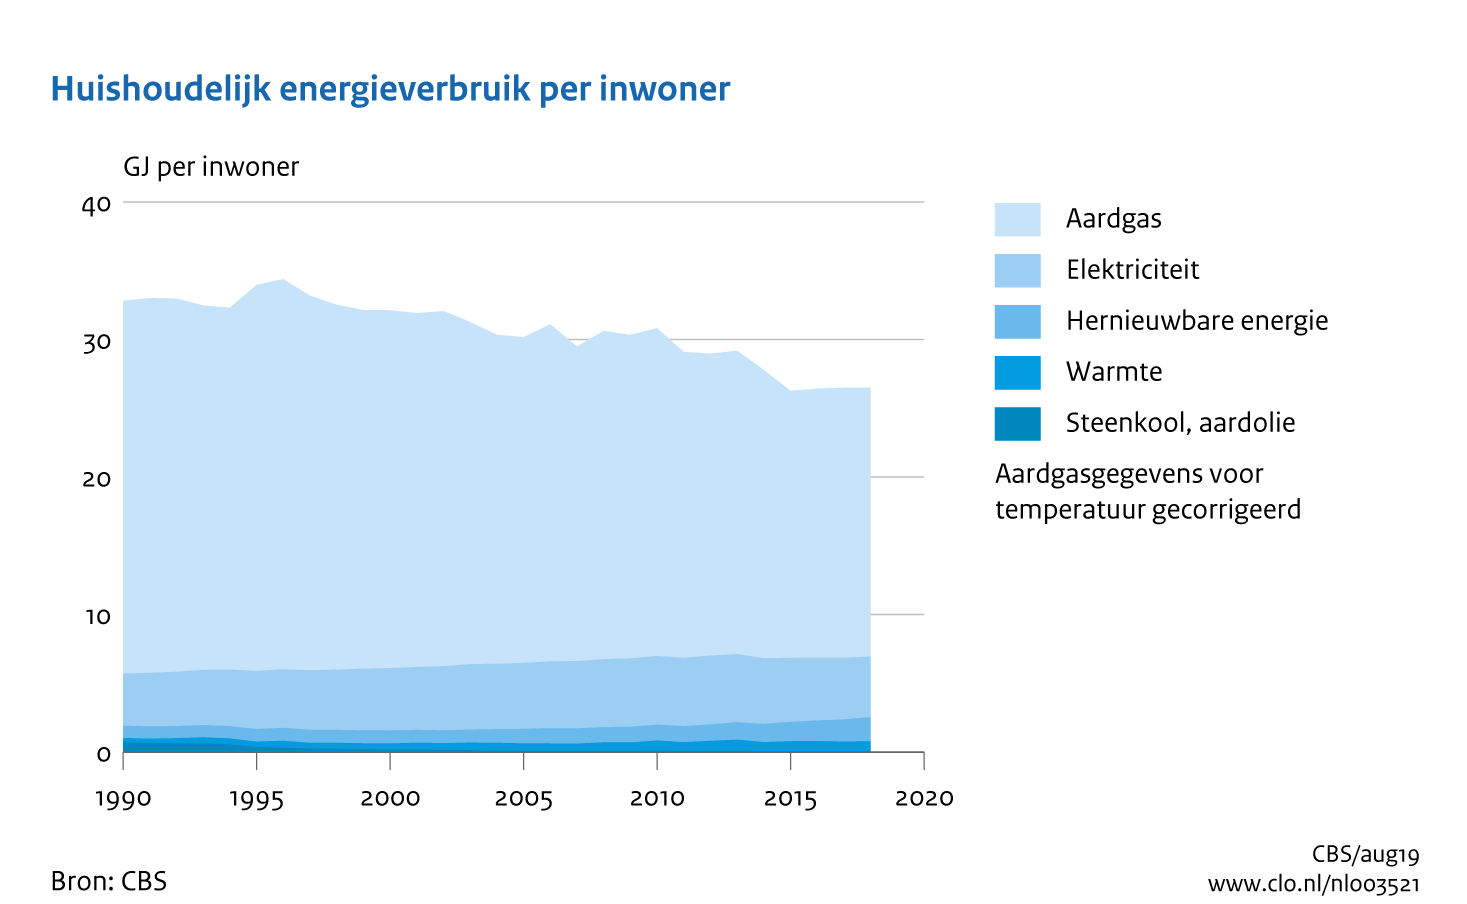 Figuur Energieverbruik huishoudens per inwoner, 1990-2018. In de rest van de tekst wordt deze figuur uitgebreider uitgelegd.